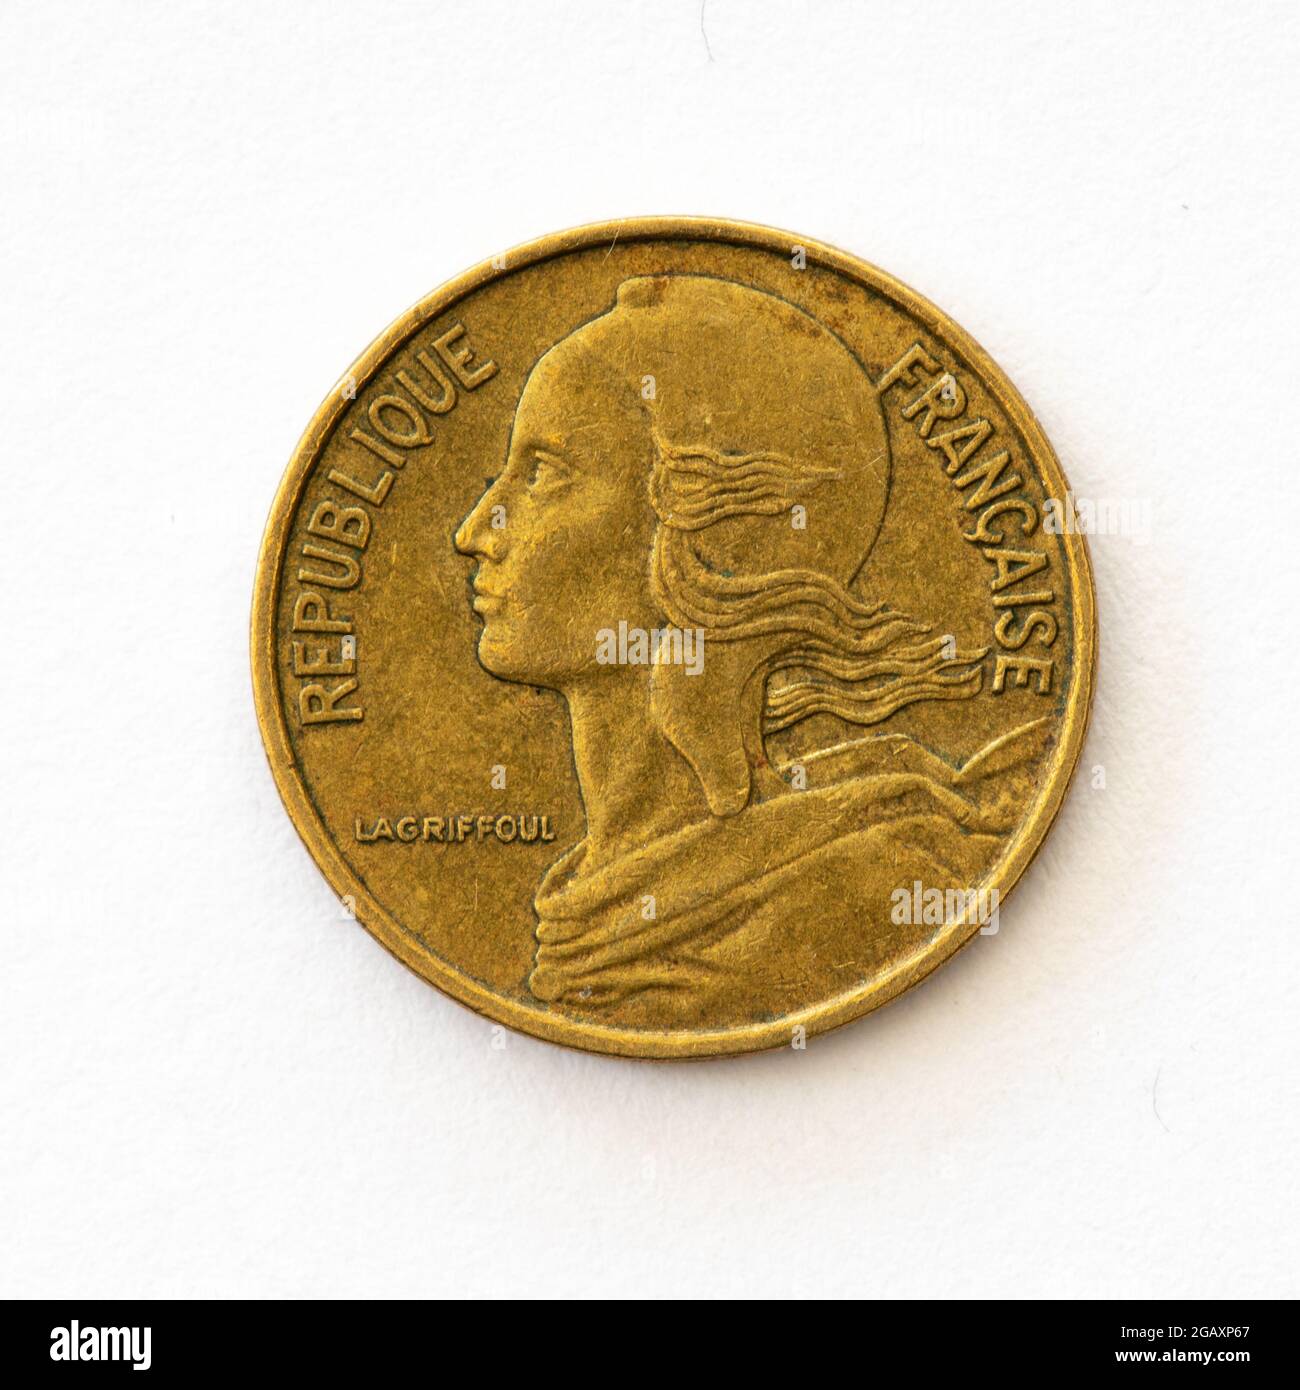 FRANCE  20 centimes 1980  MARIANNE etat 